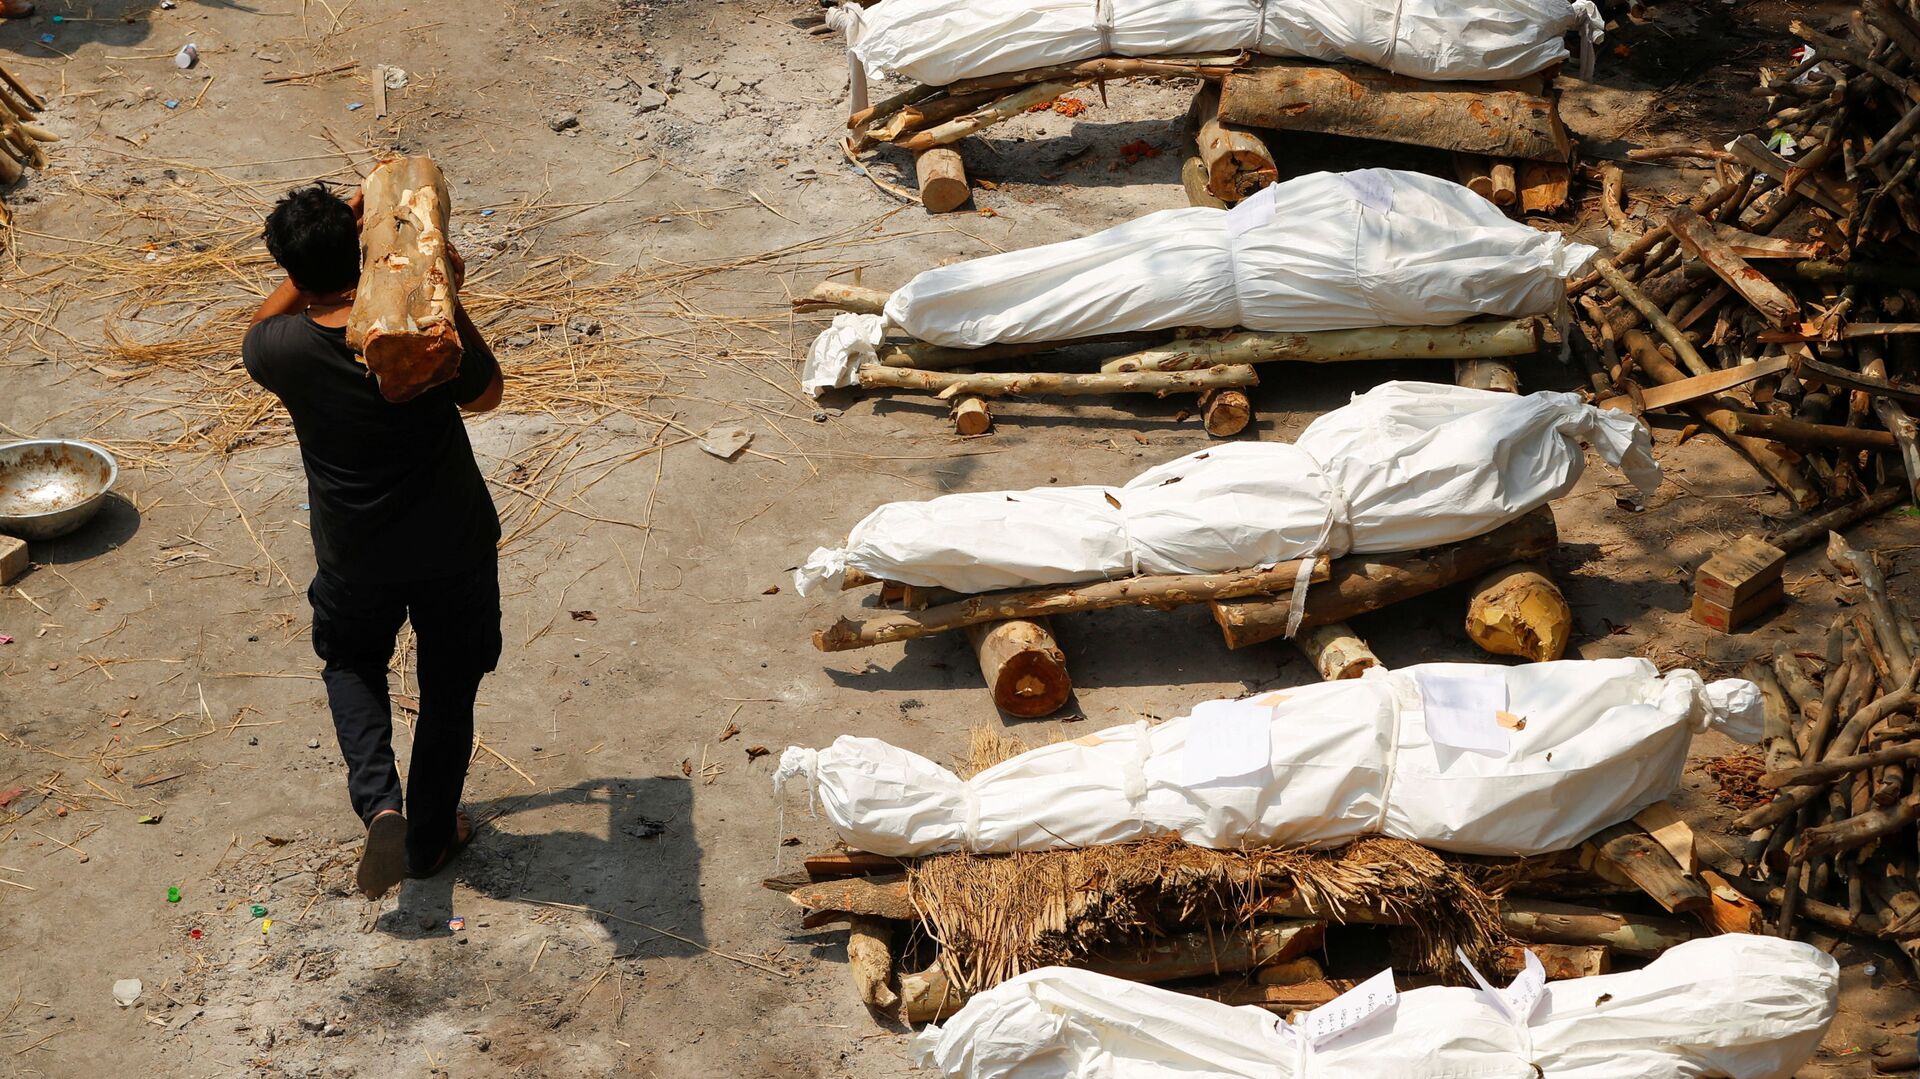 Мужчина с дровами проходит мимо погребальных костров во время массовой кремации в Индии - Sputnik Ўзбекистон, 1920, 05.08.2022